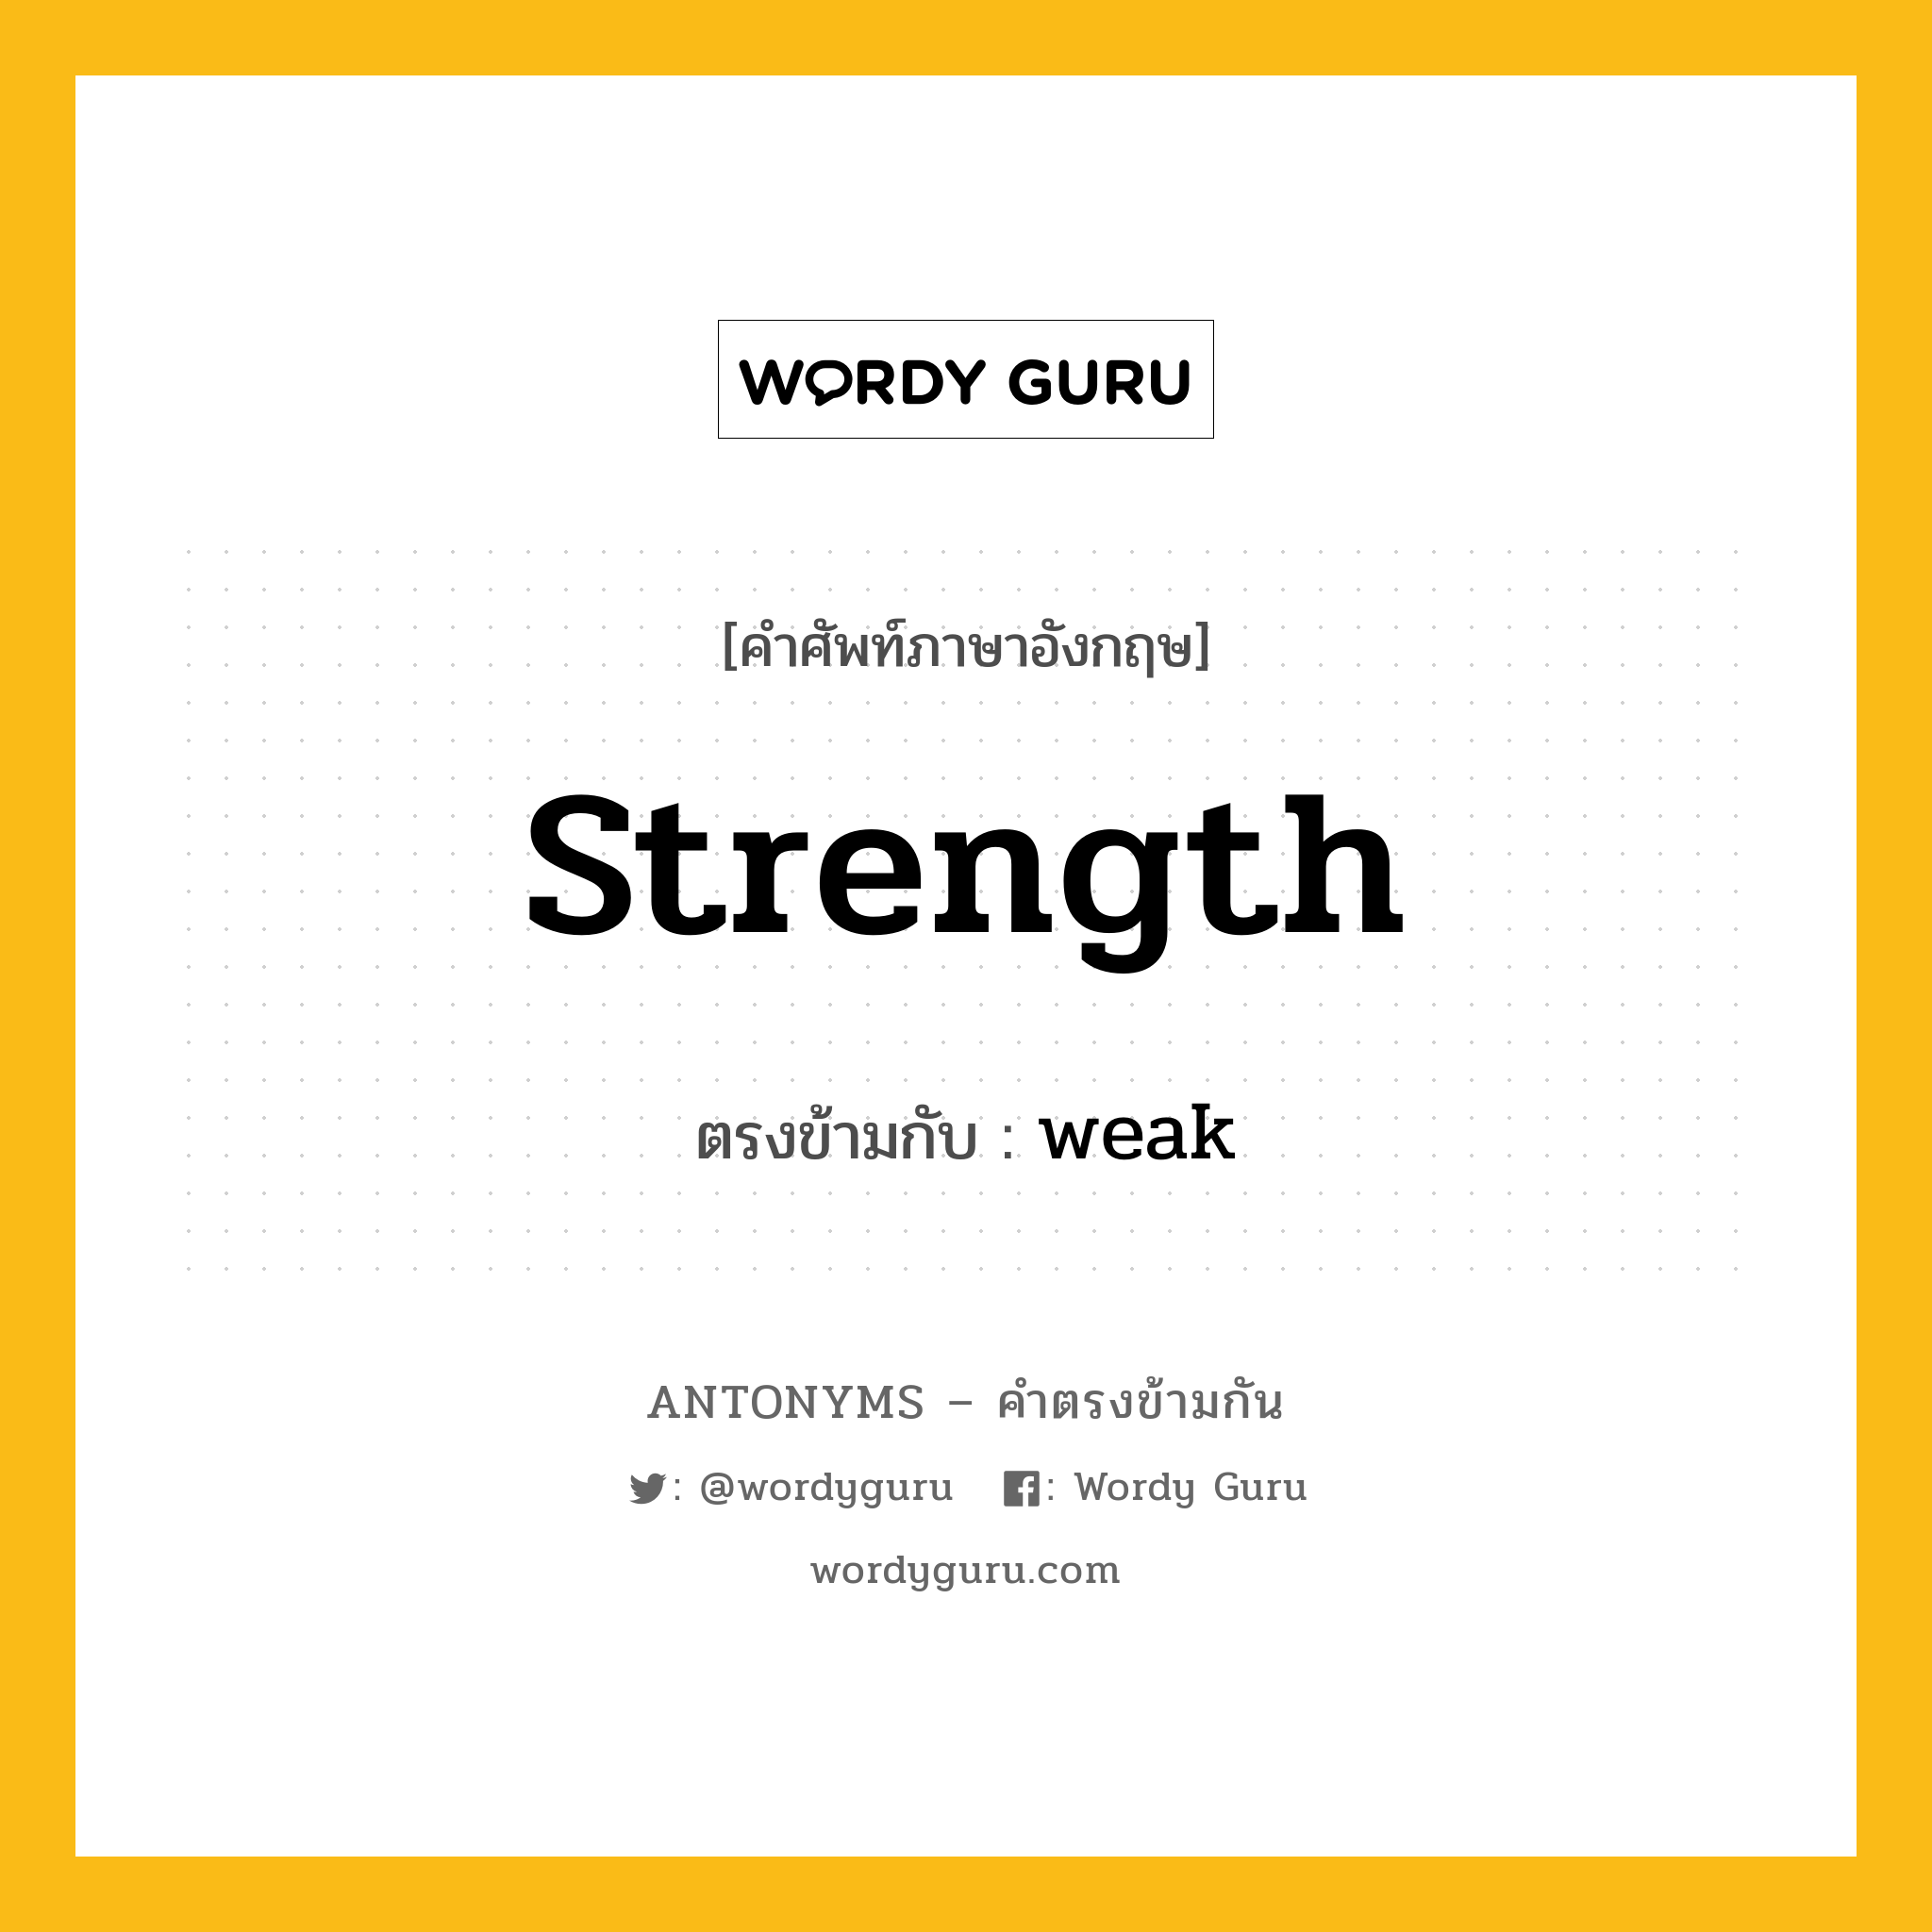 strength เป็นคำตรงข้ามกับคำไหนบ้าง?, คำศัพท์ภาษาอังกฤษ strength ตรงข้ามกับ weak หมวด weak